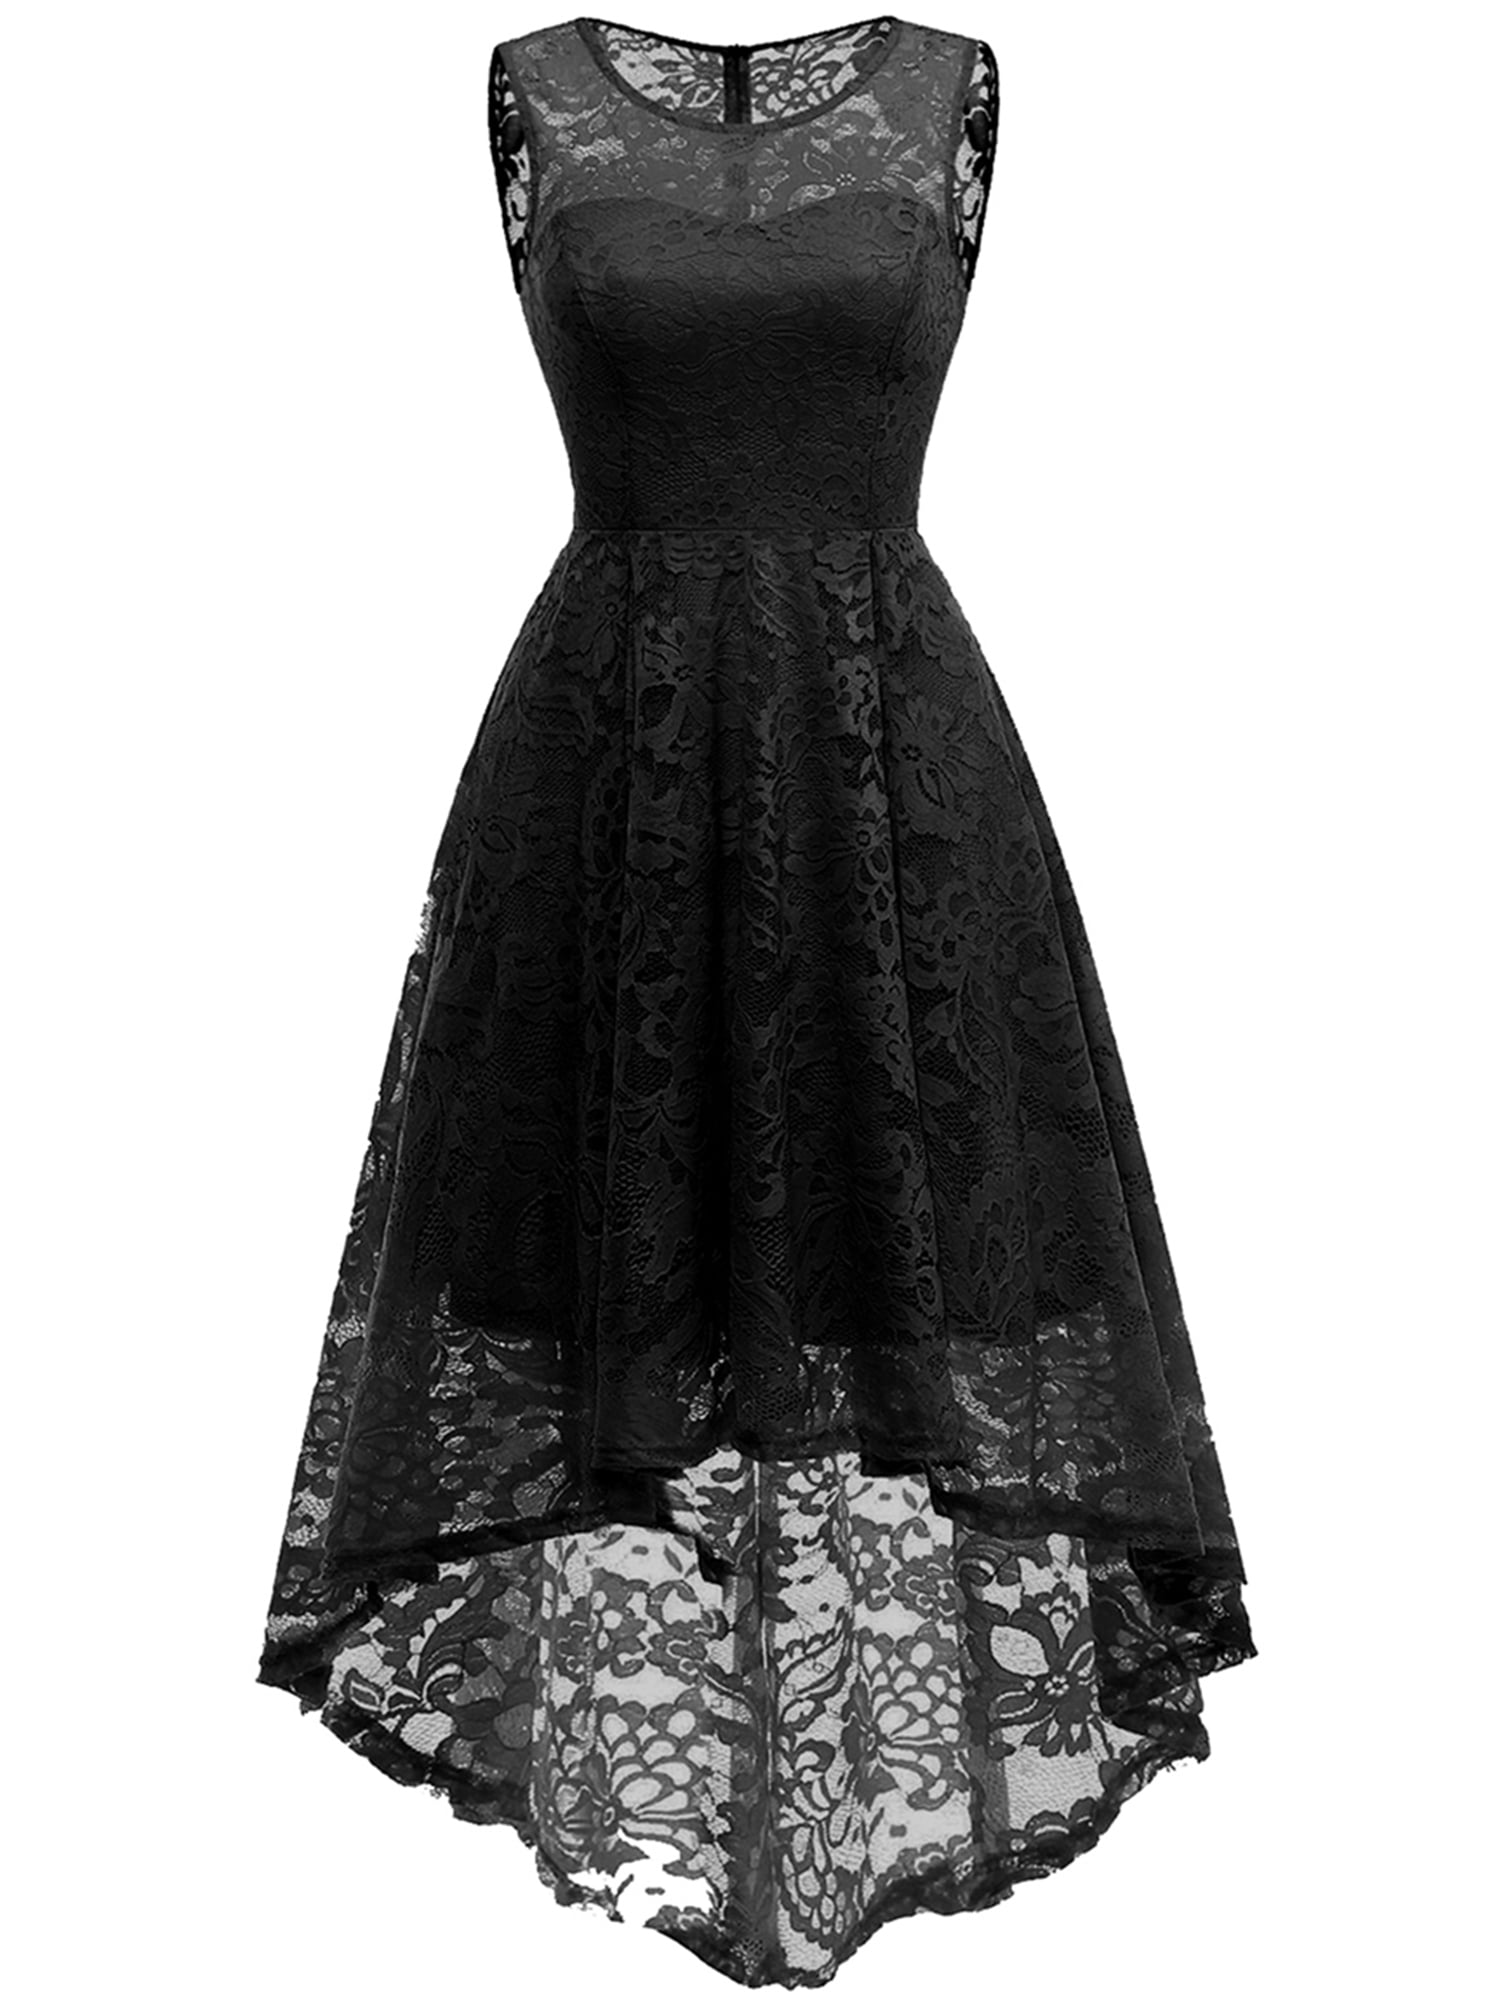 Lace Black Dresses